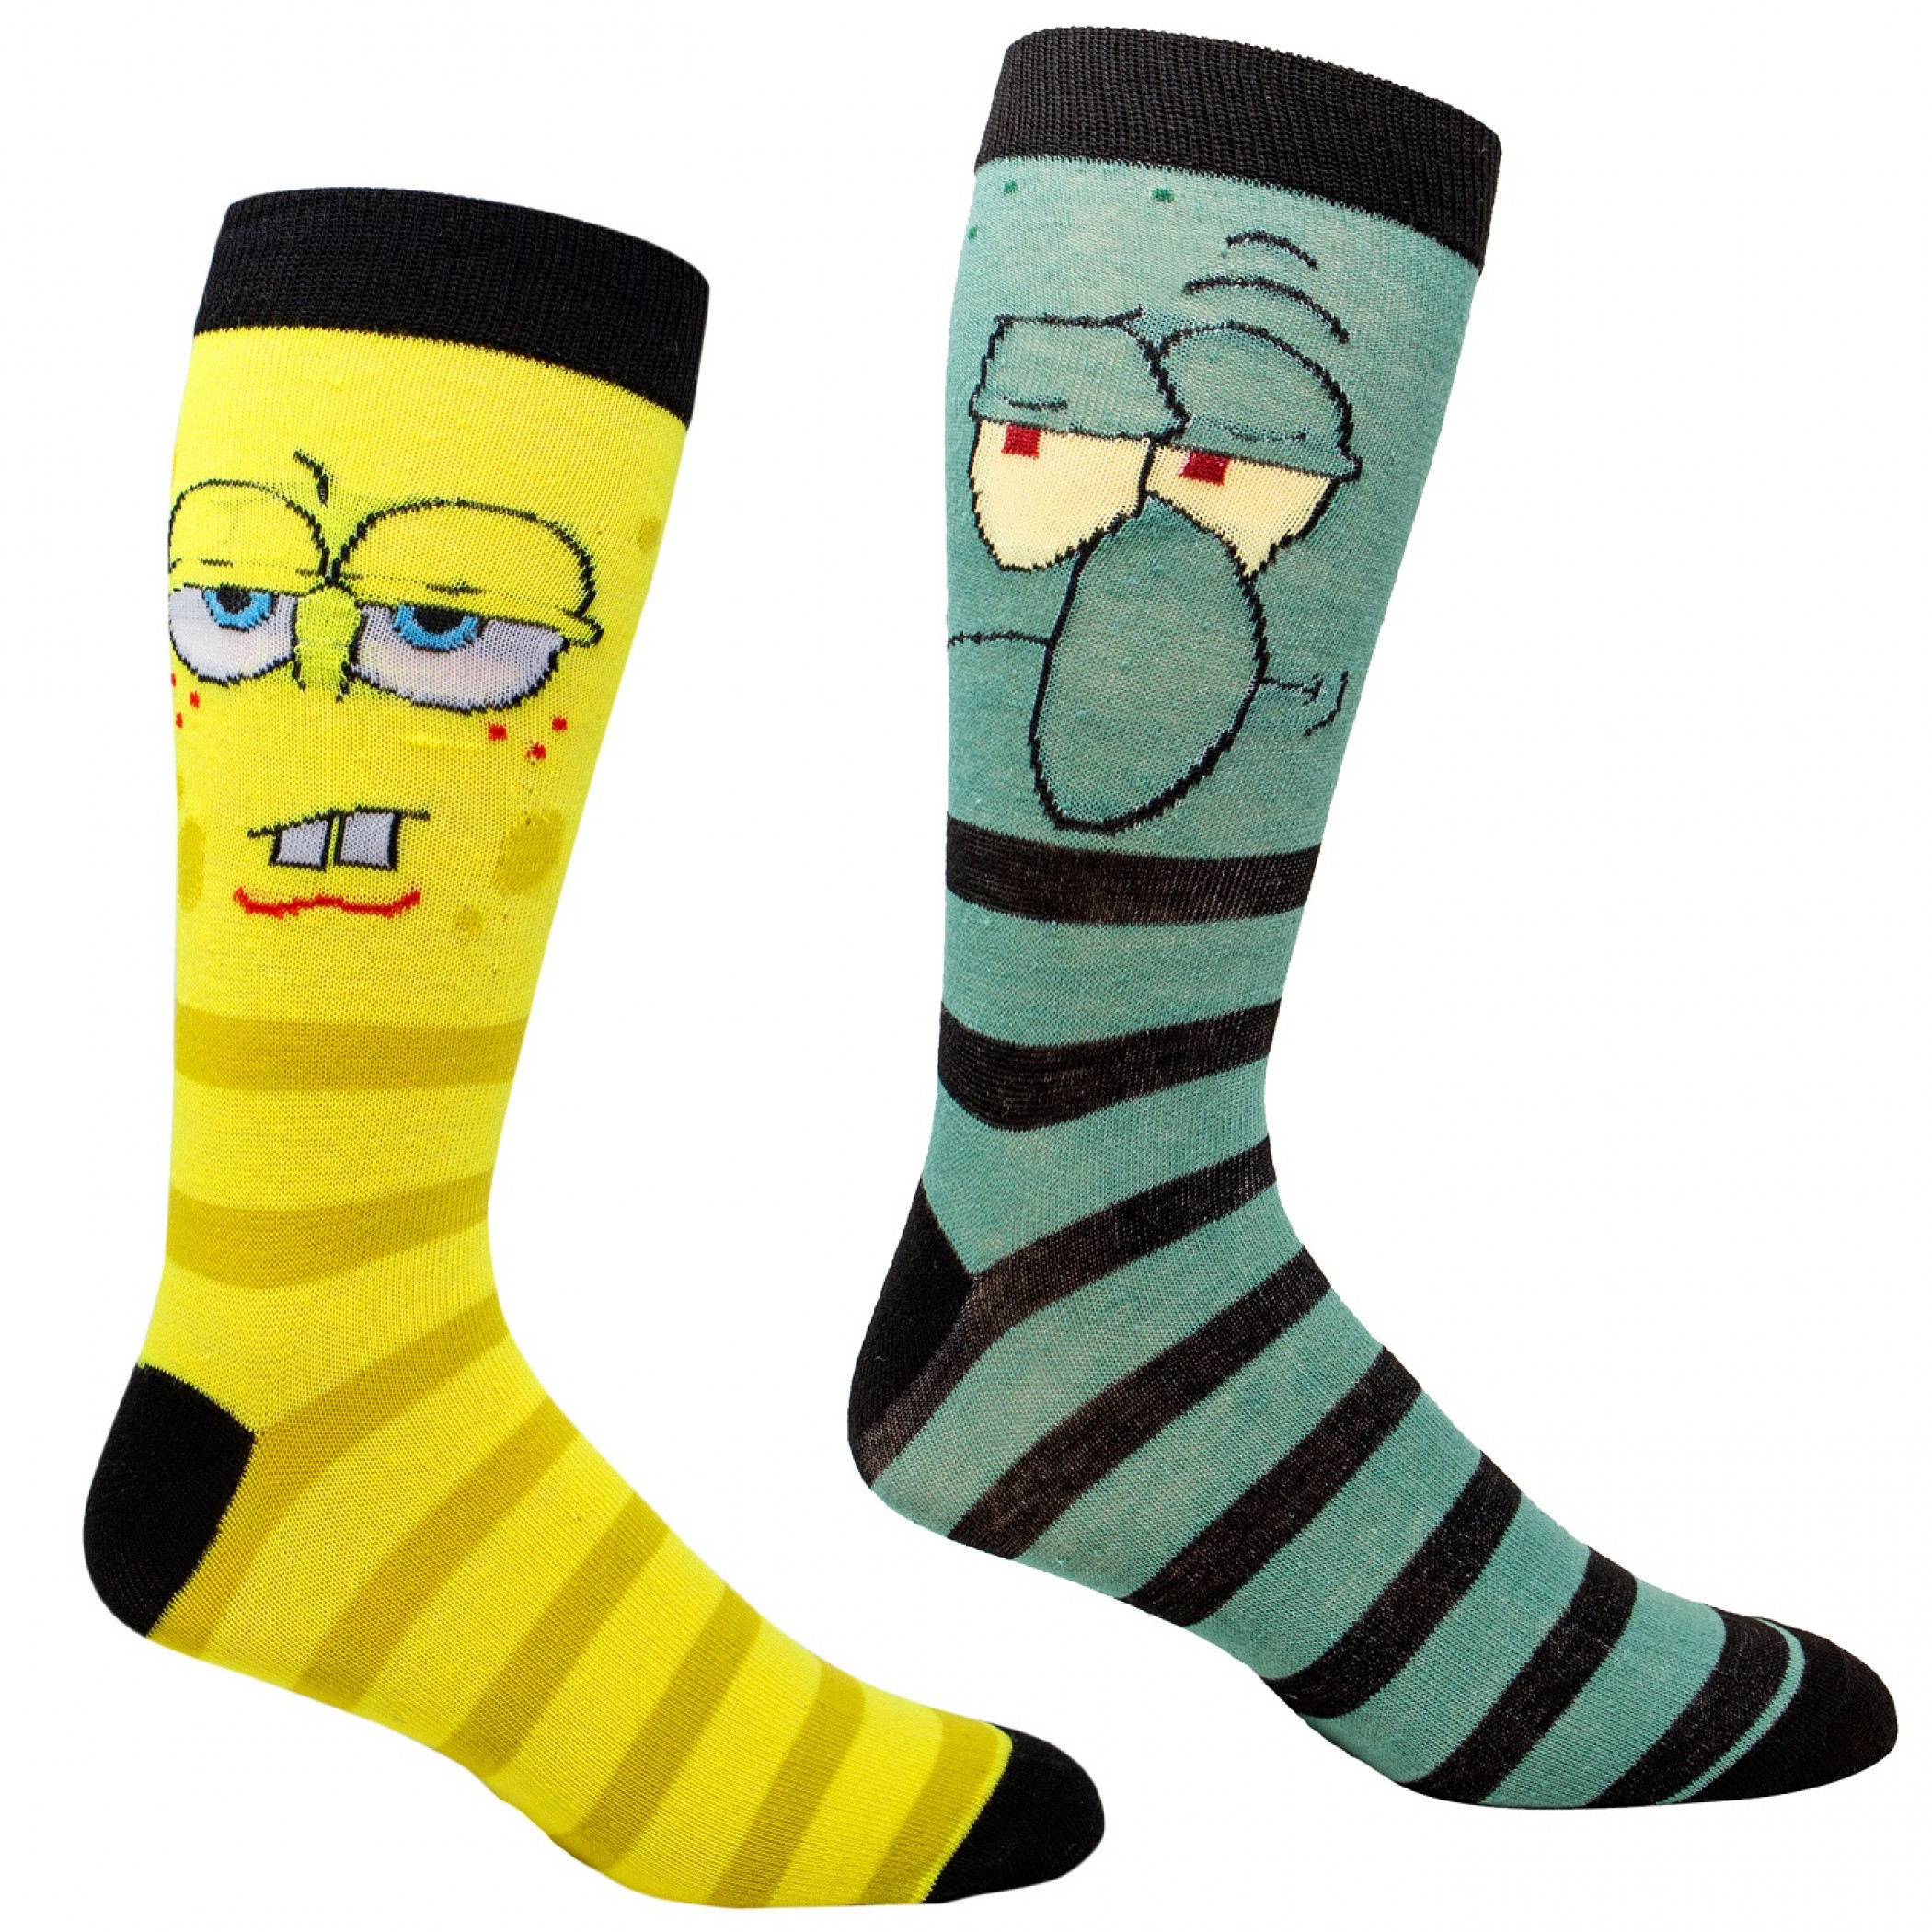 SpongeBob SquarePants and Squidward 2-Pair Pack Casual Crew Socks